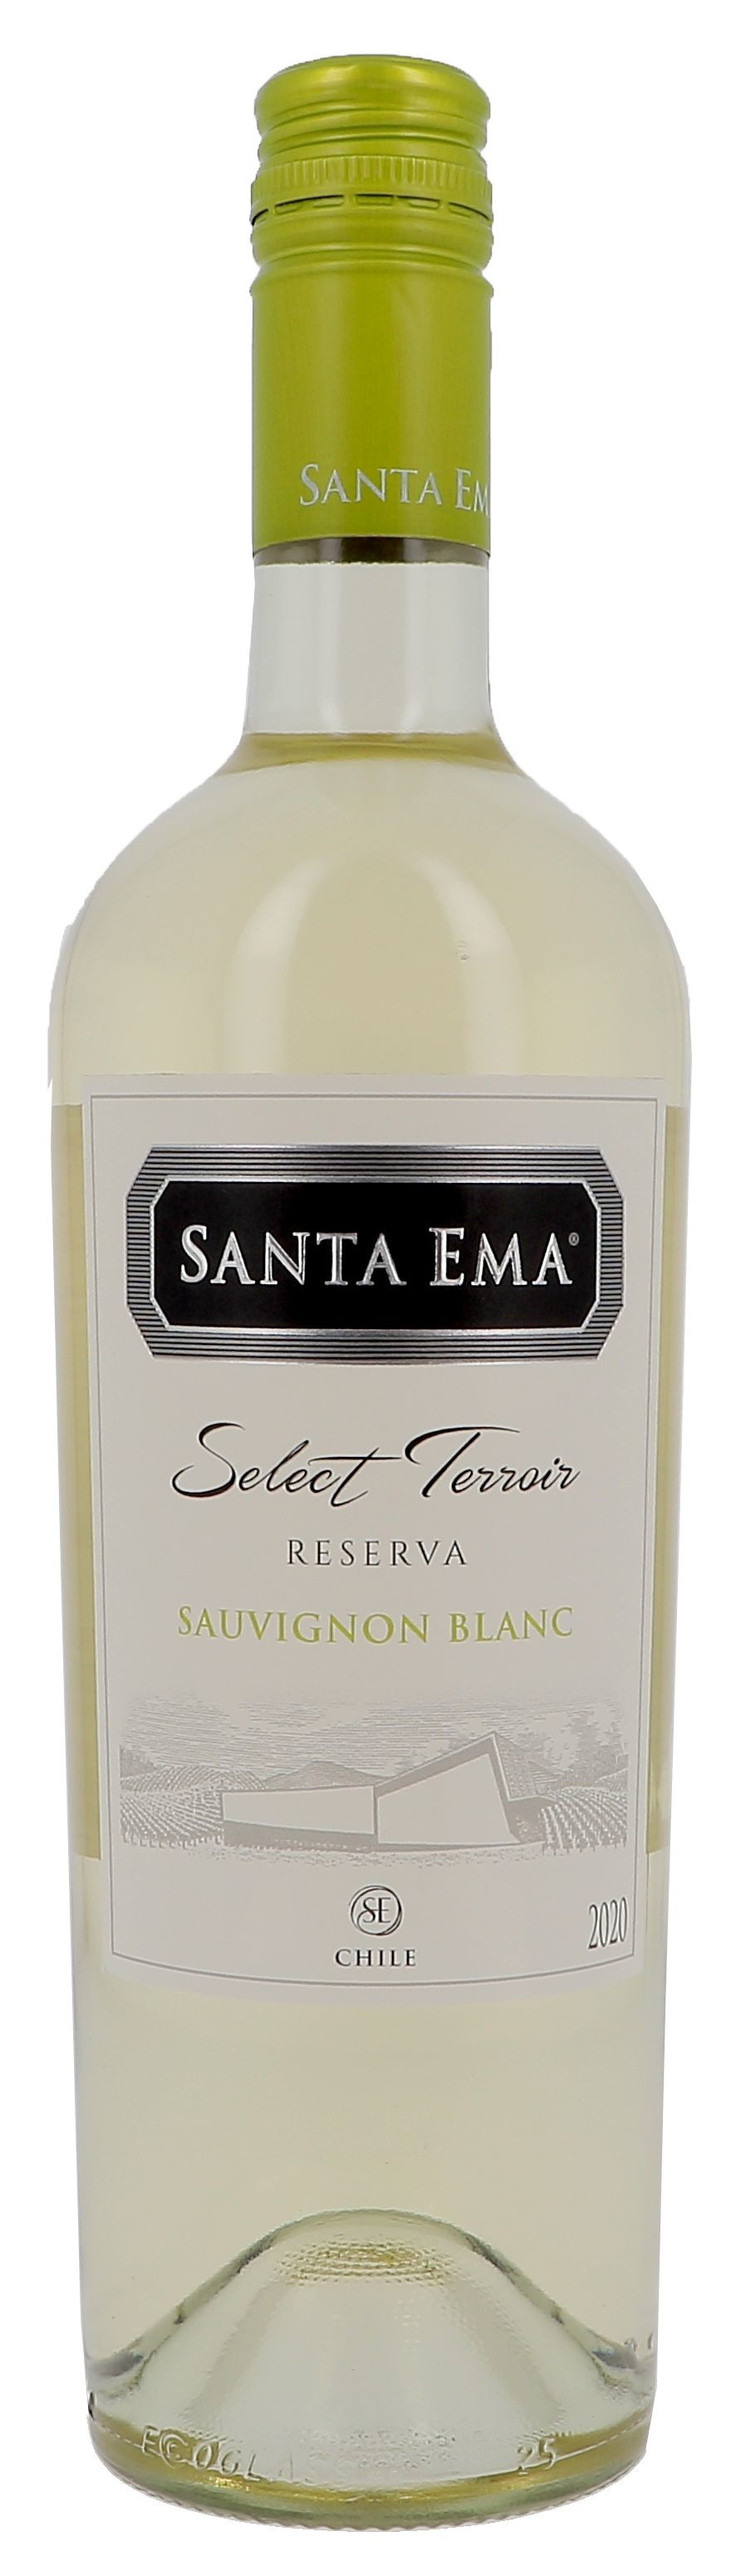 Santa Ema sauvignon blanc 75cl 2021 Maipo Valley - Vin Chilien